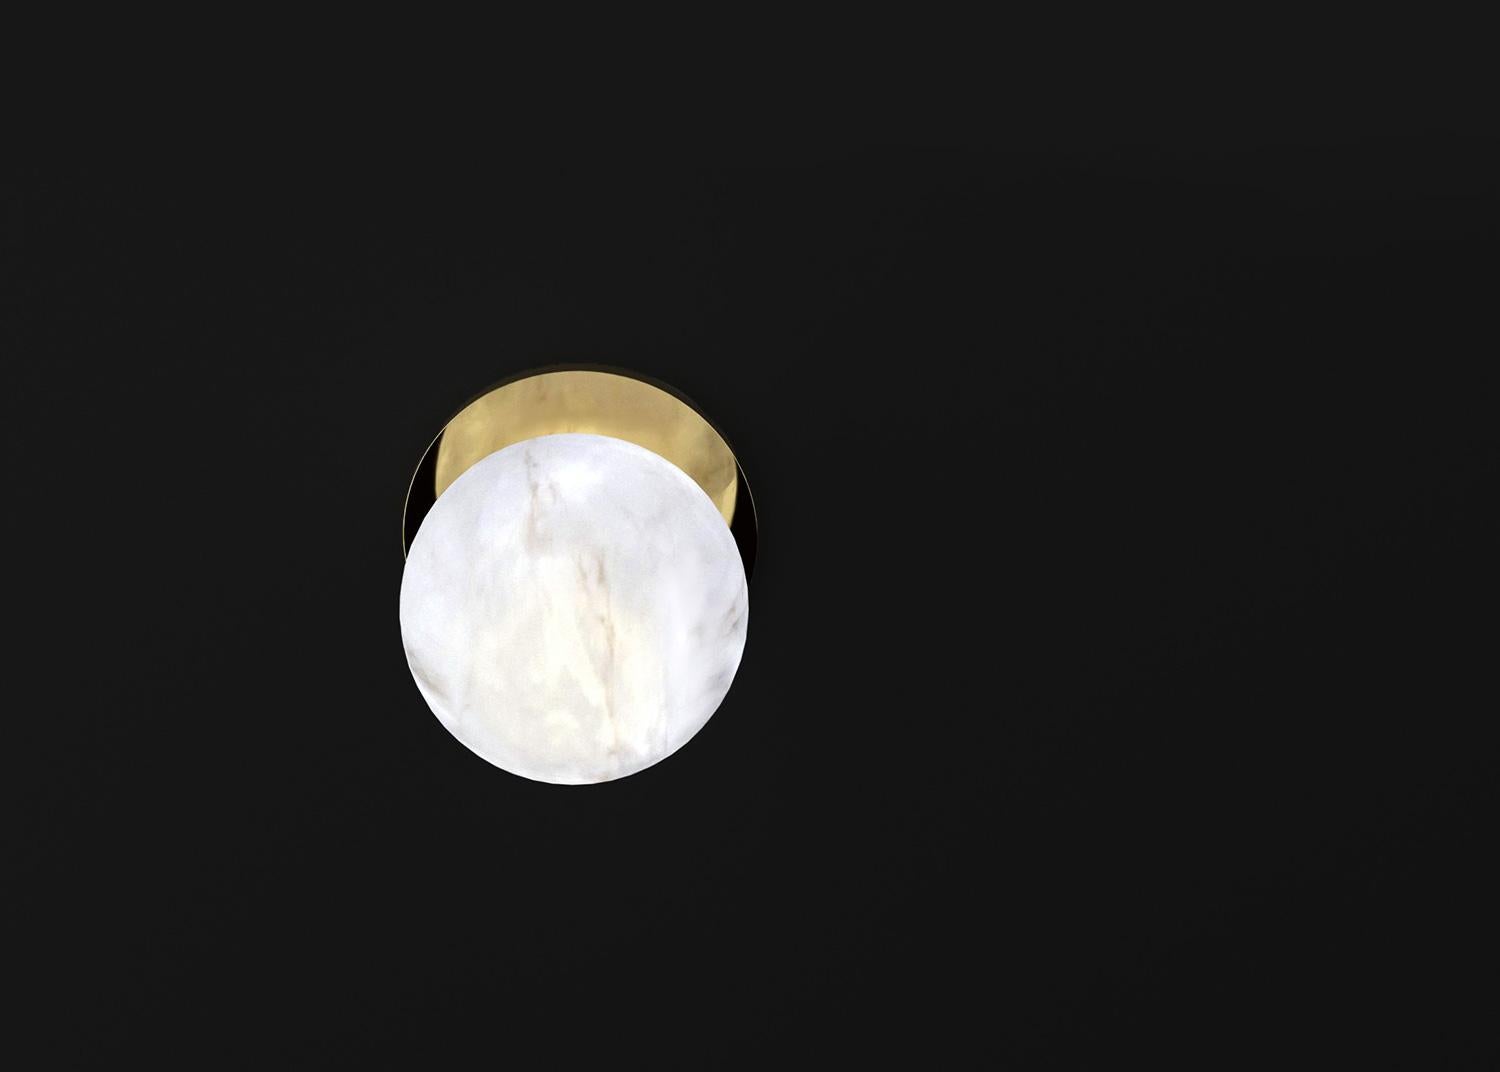 Ofione Glänzende Goldmetallapplikation von Alabastro Italiano
Abmessungen: D 16 x B 16 x H 16 cm.
MATERIALIEN: Weißer Alabaster und Metall.

Erhältlich in verschiedenen Ausführungen: Glänzendes Silber, Bronze, gebürstetes Messing, Ruggine von